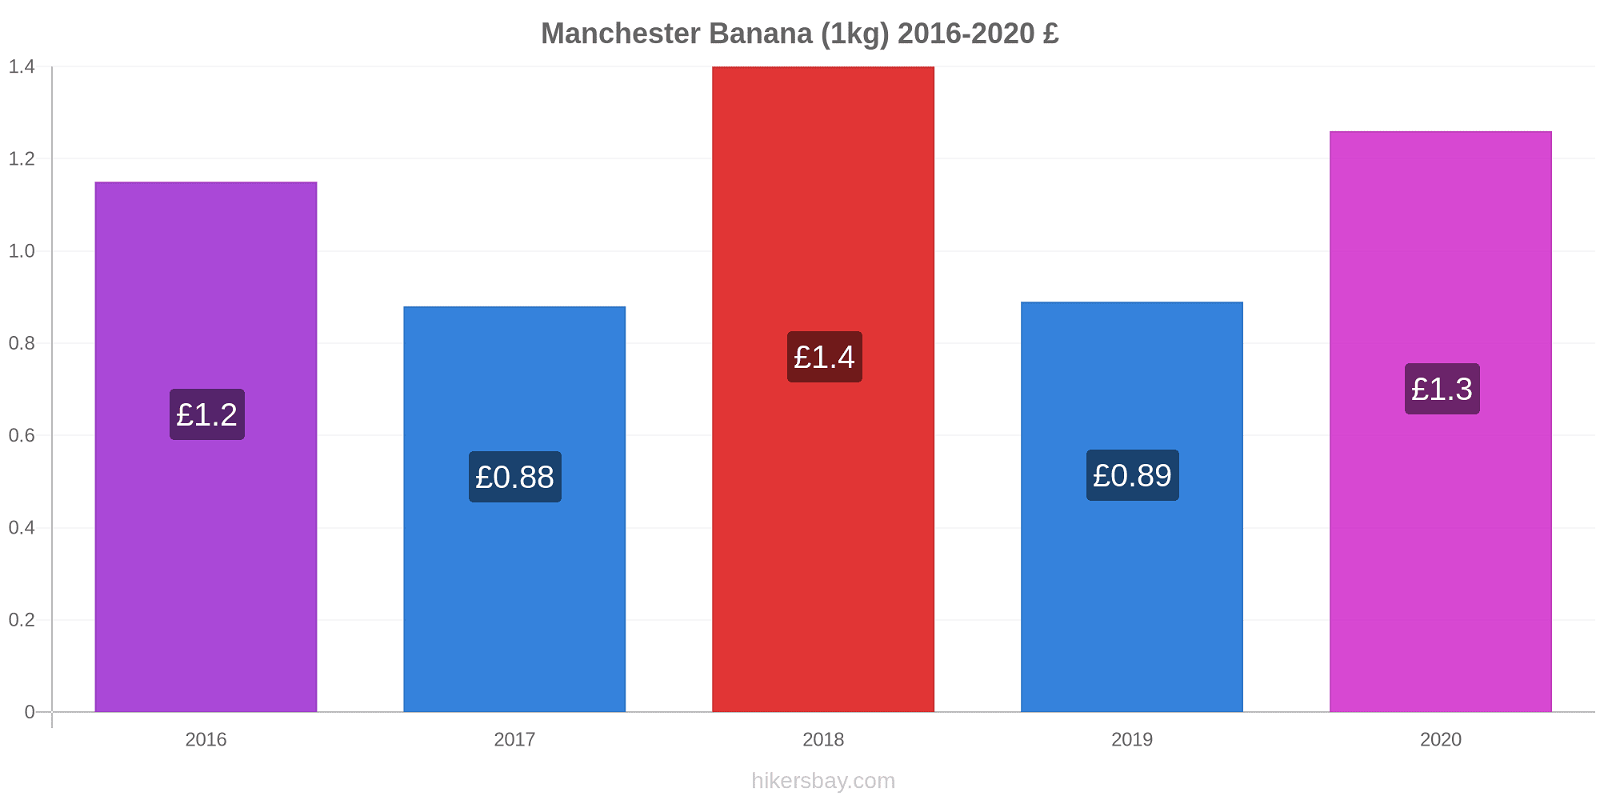 Manchester modificări de preț Banana (1kg) hikersbay.com